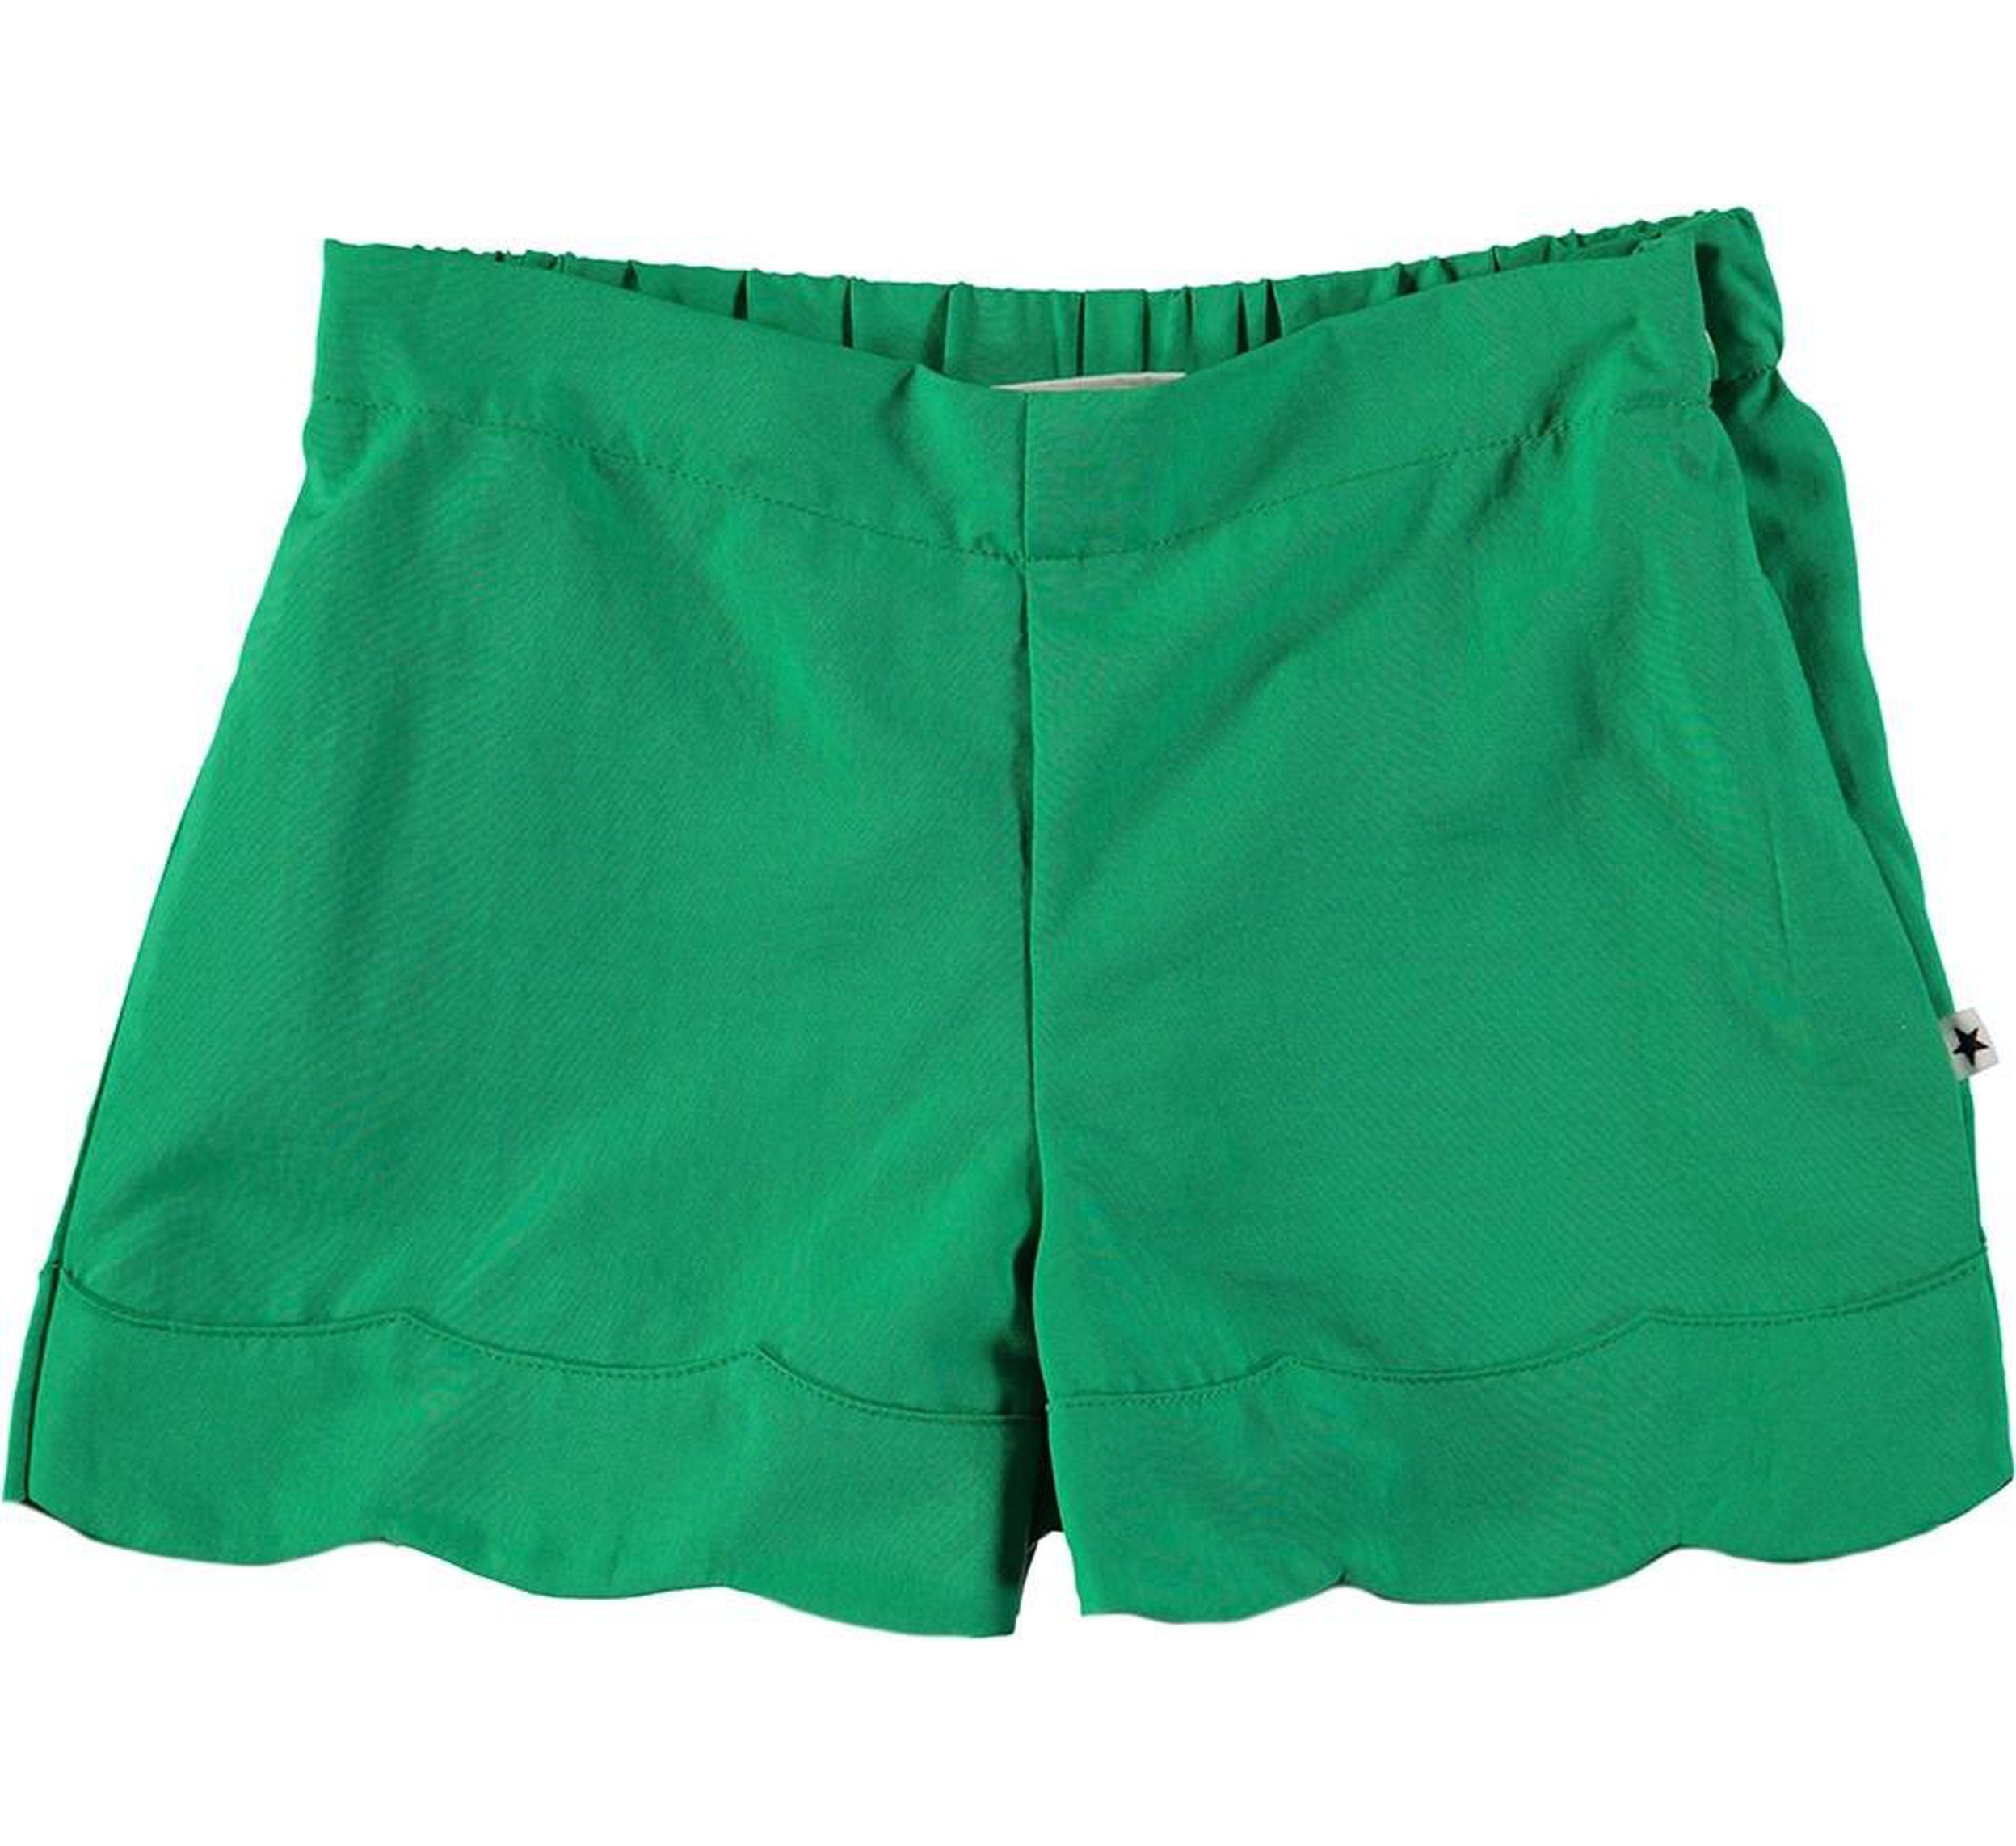 Ama-ming green shorts-SHORTS-molo-110-5 yrs-jellyfishkids.com.cy